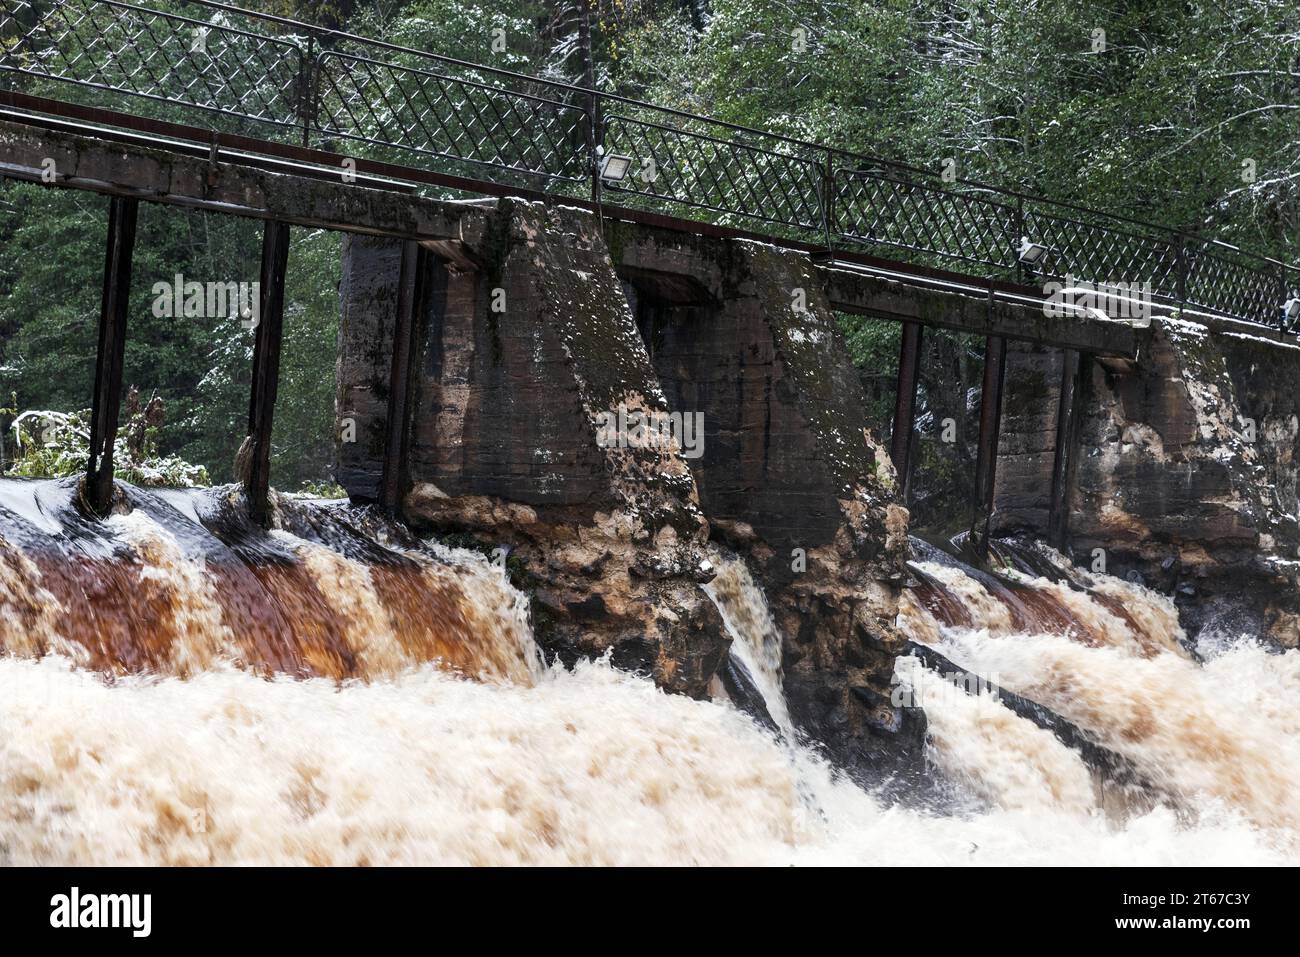 Barrage de l'ancienne centrale hydroélectrique finlandaise sur la rivière Volchya. Centrale hydroélectrique de Sosnovskaya. Sosnovo, oblast de Leningrad, Russie Banque D'Images